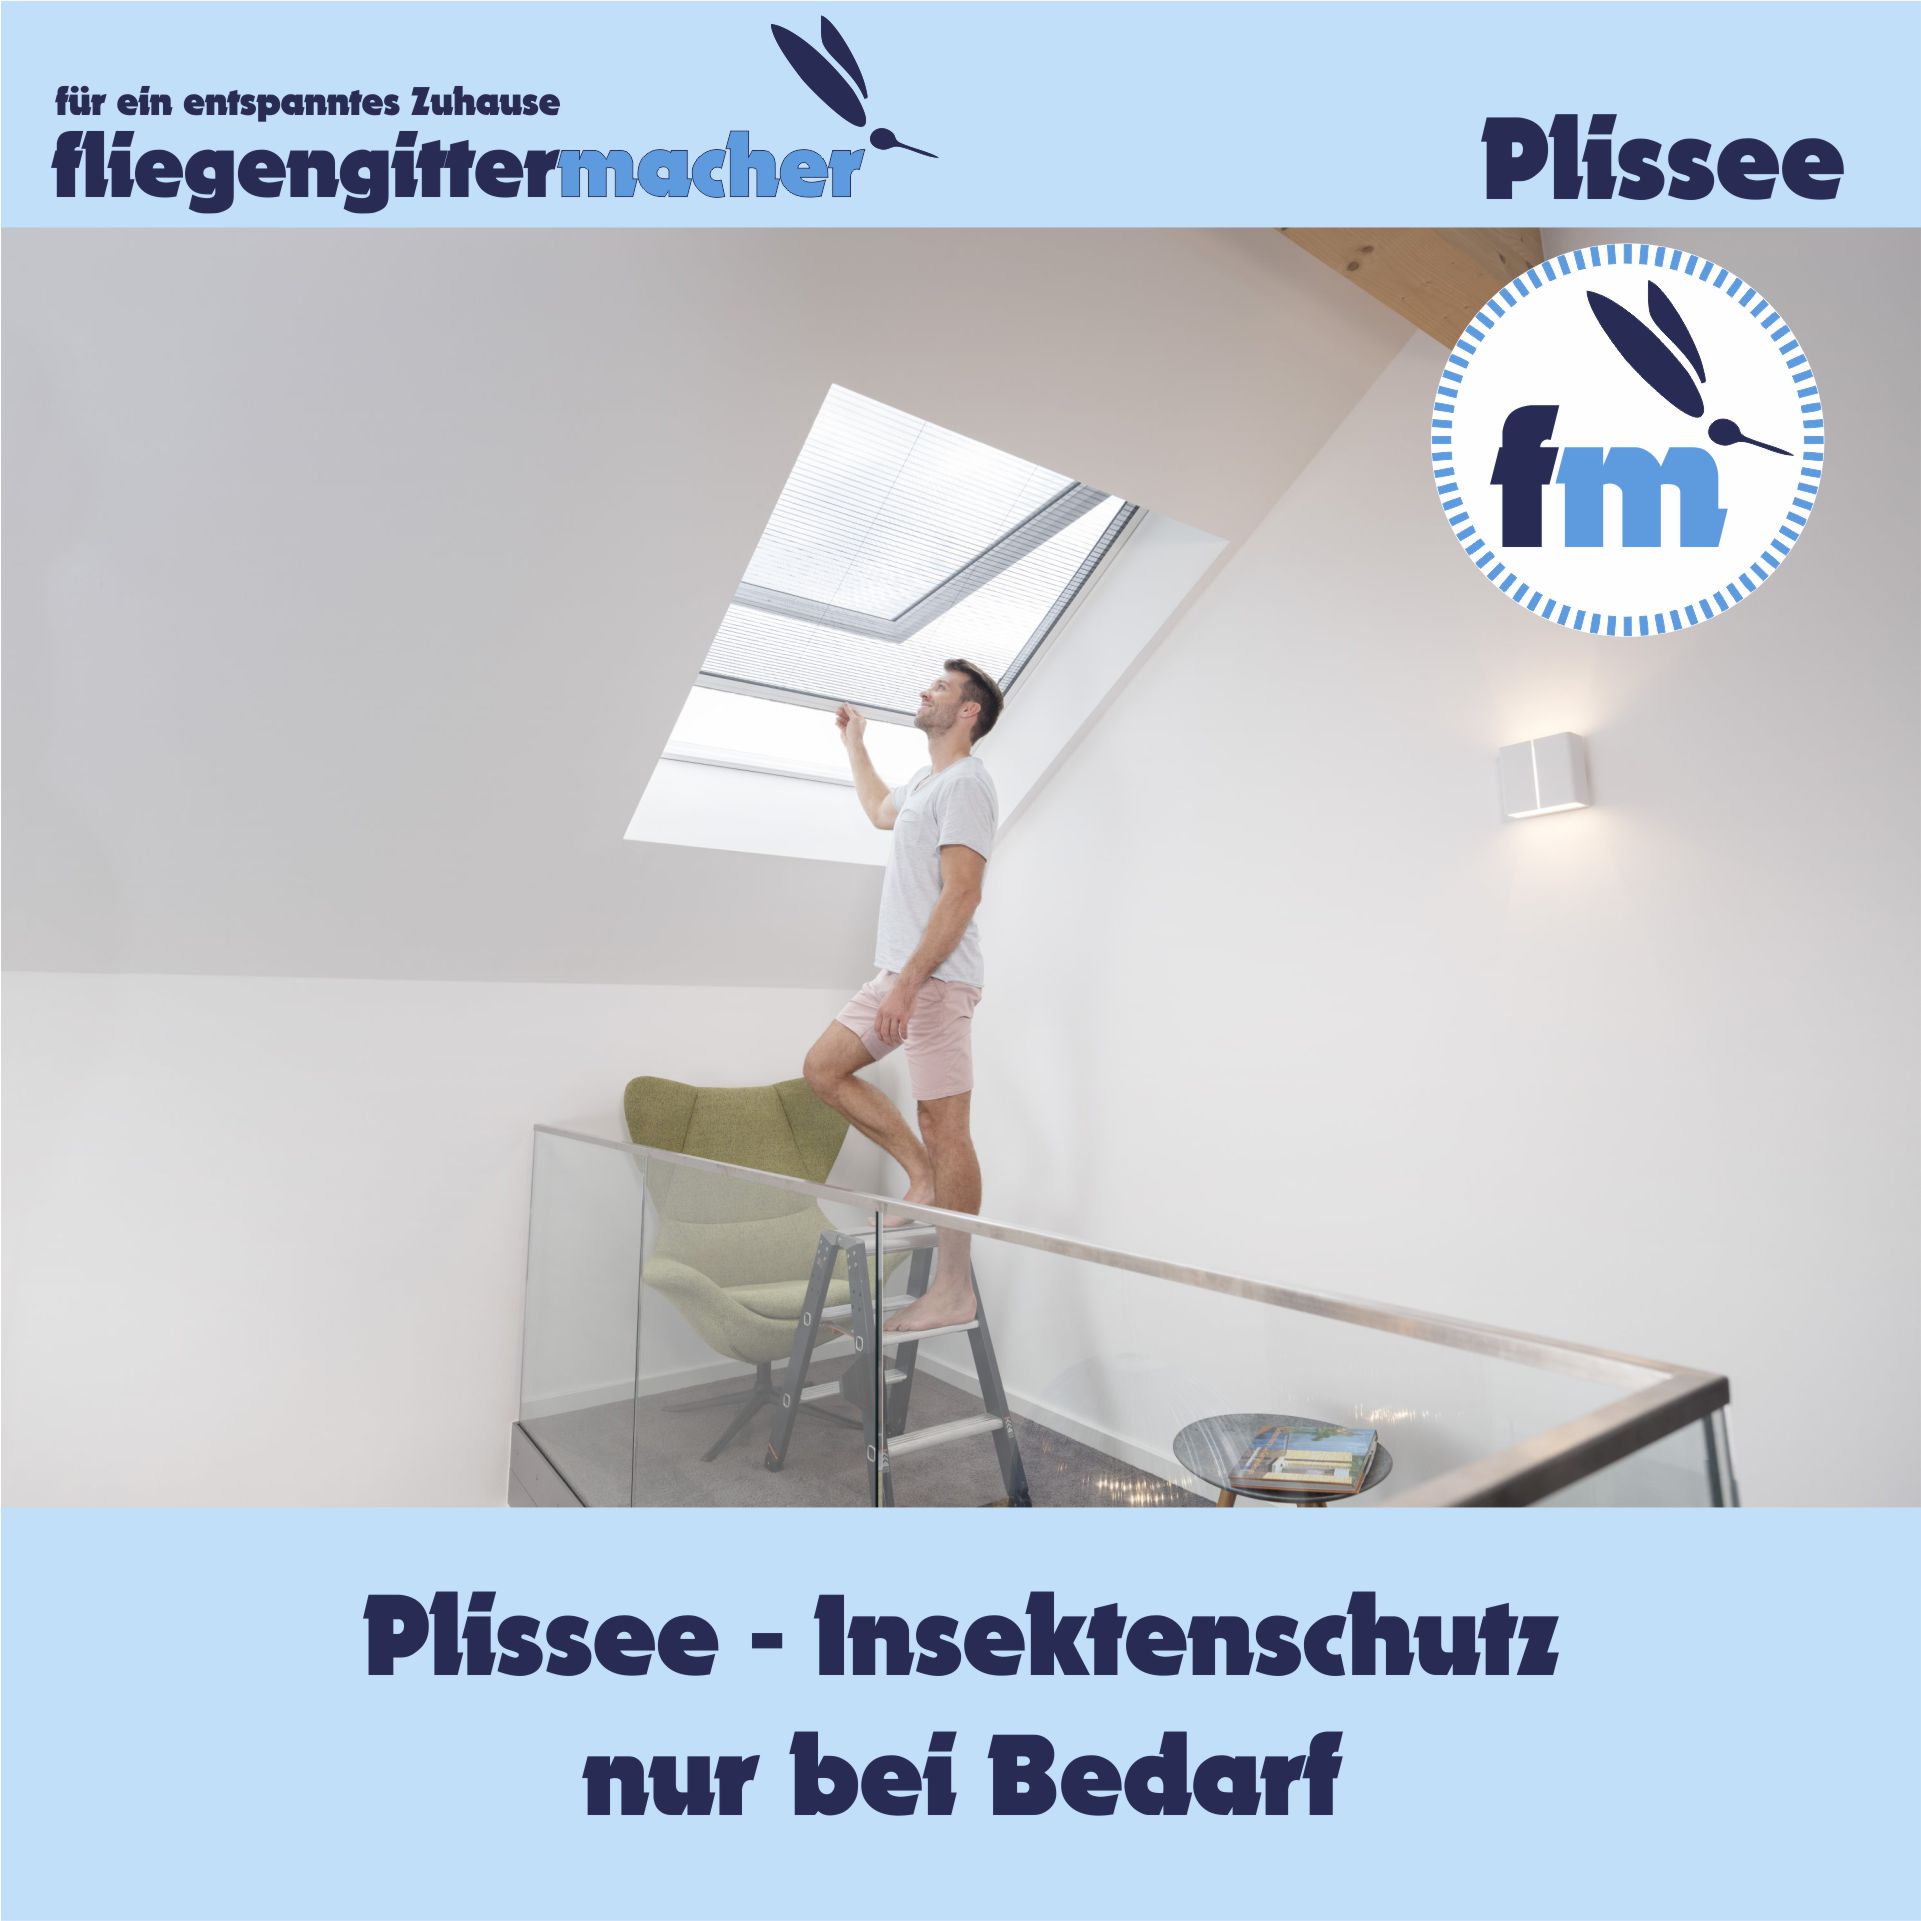 Insektenschutz Plissee Dachgeschoss | www.fliegengittermacher.de | Fliegengitter nach Maß